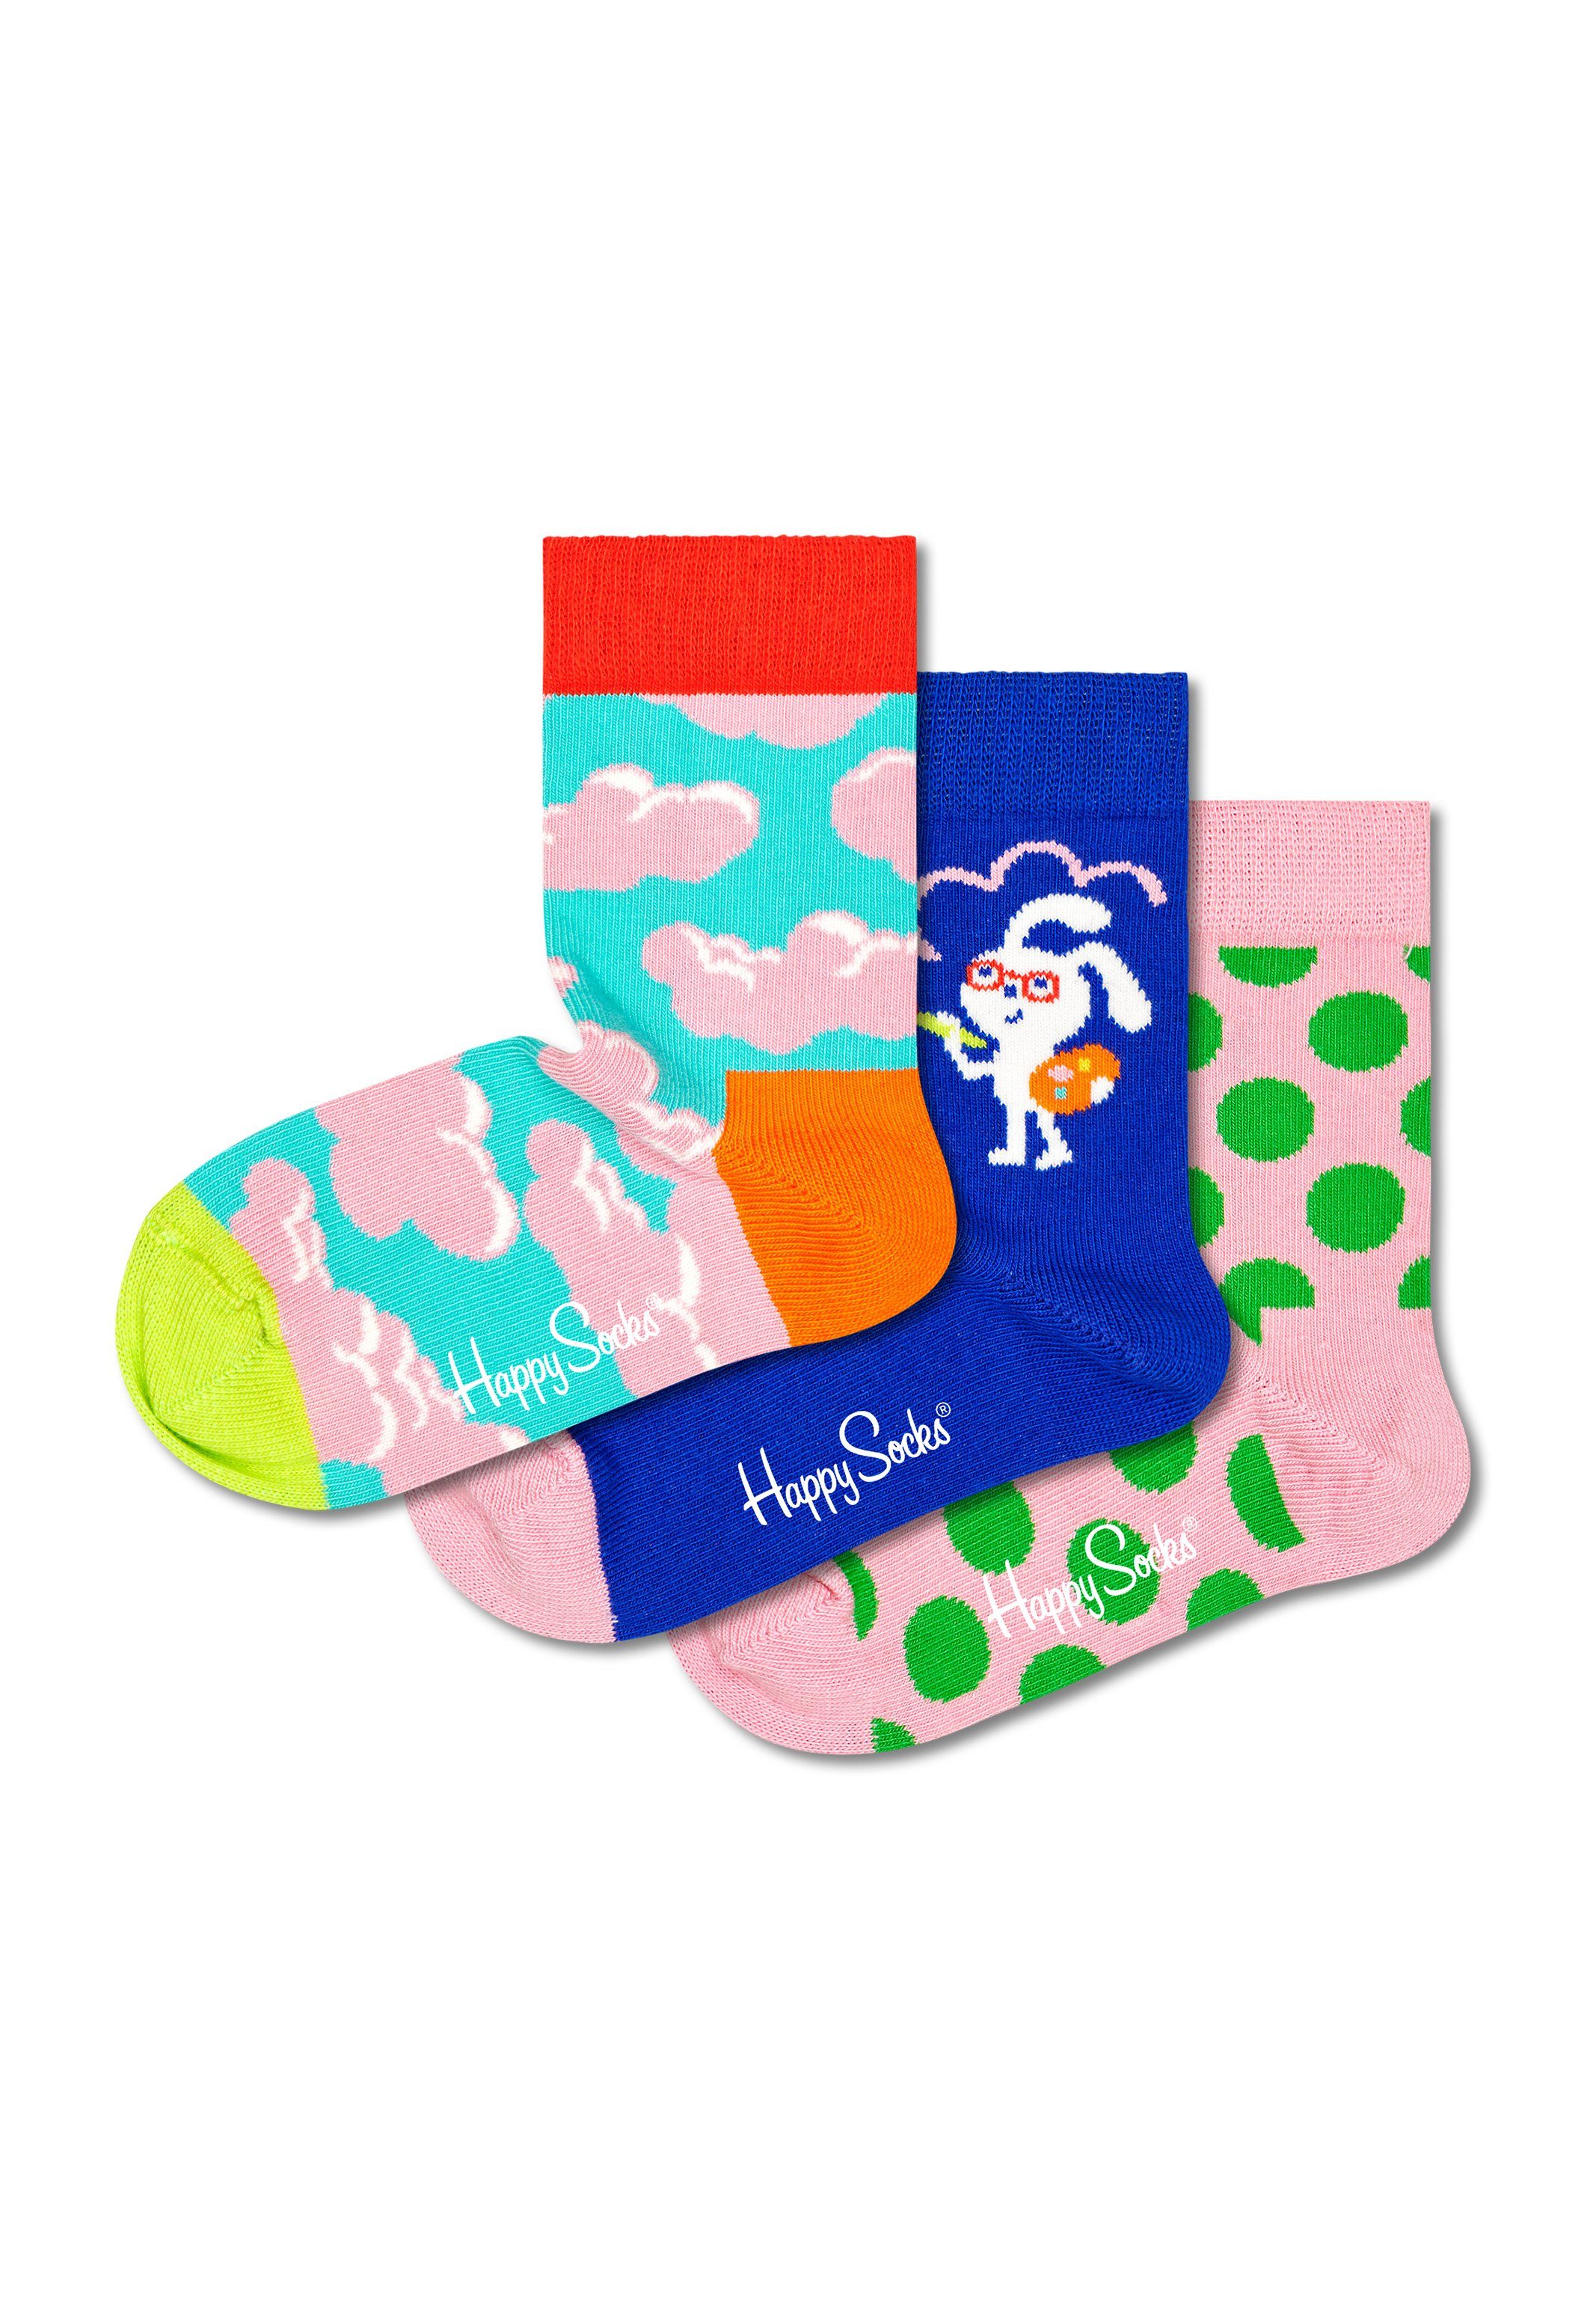 Happy Socks Langsocken Kids Over The Rainbow Geschenk Box (Spar-Set, 3-Paar) 3 Paar Socken - Baumwolle - 3 Paar bunte Socken in einer Geschenkbox